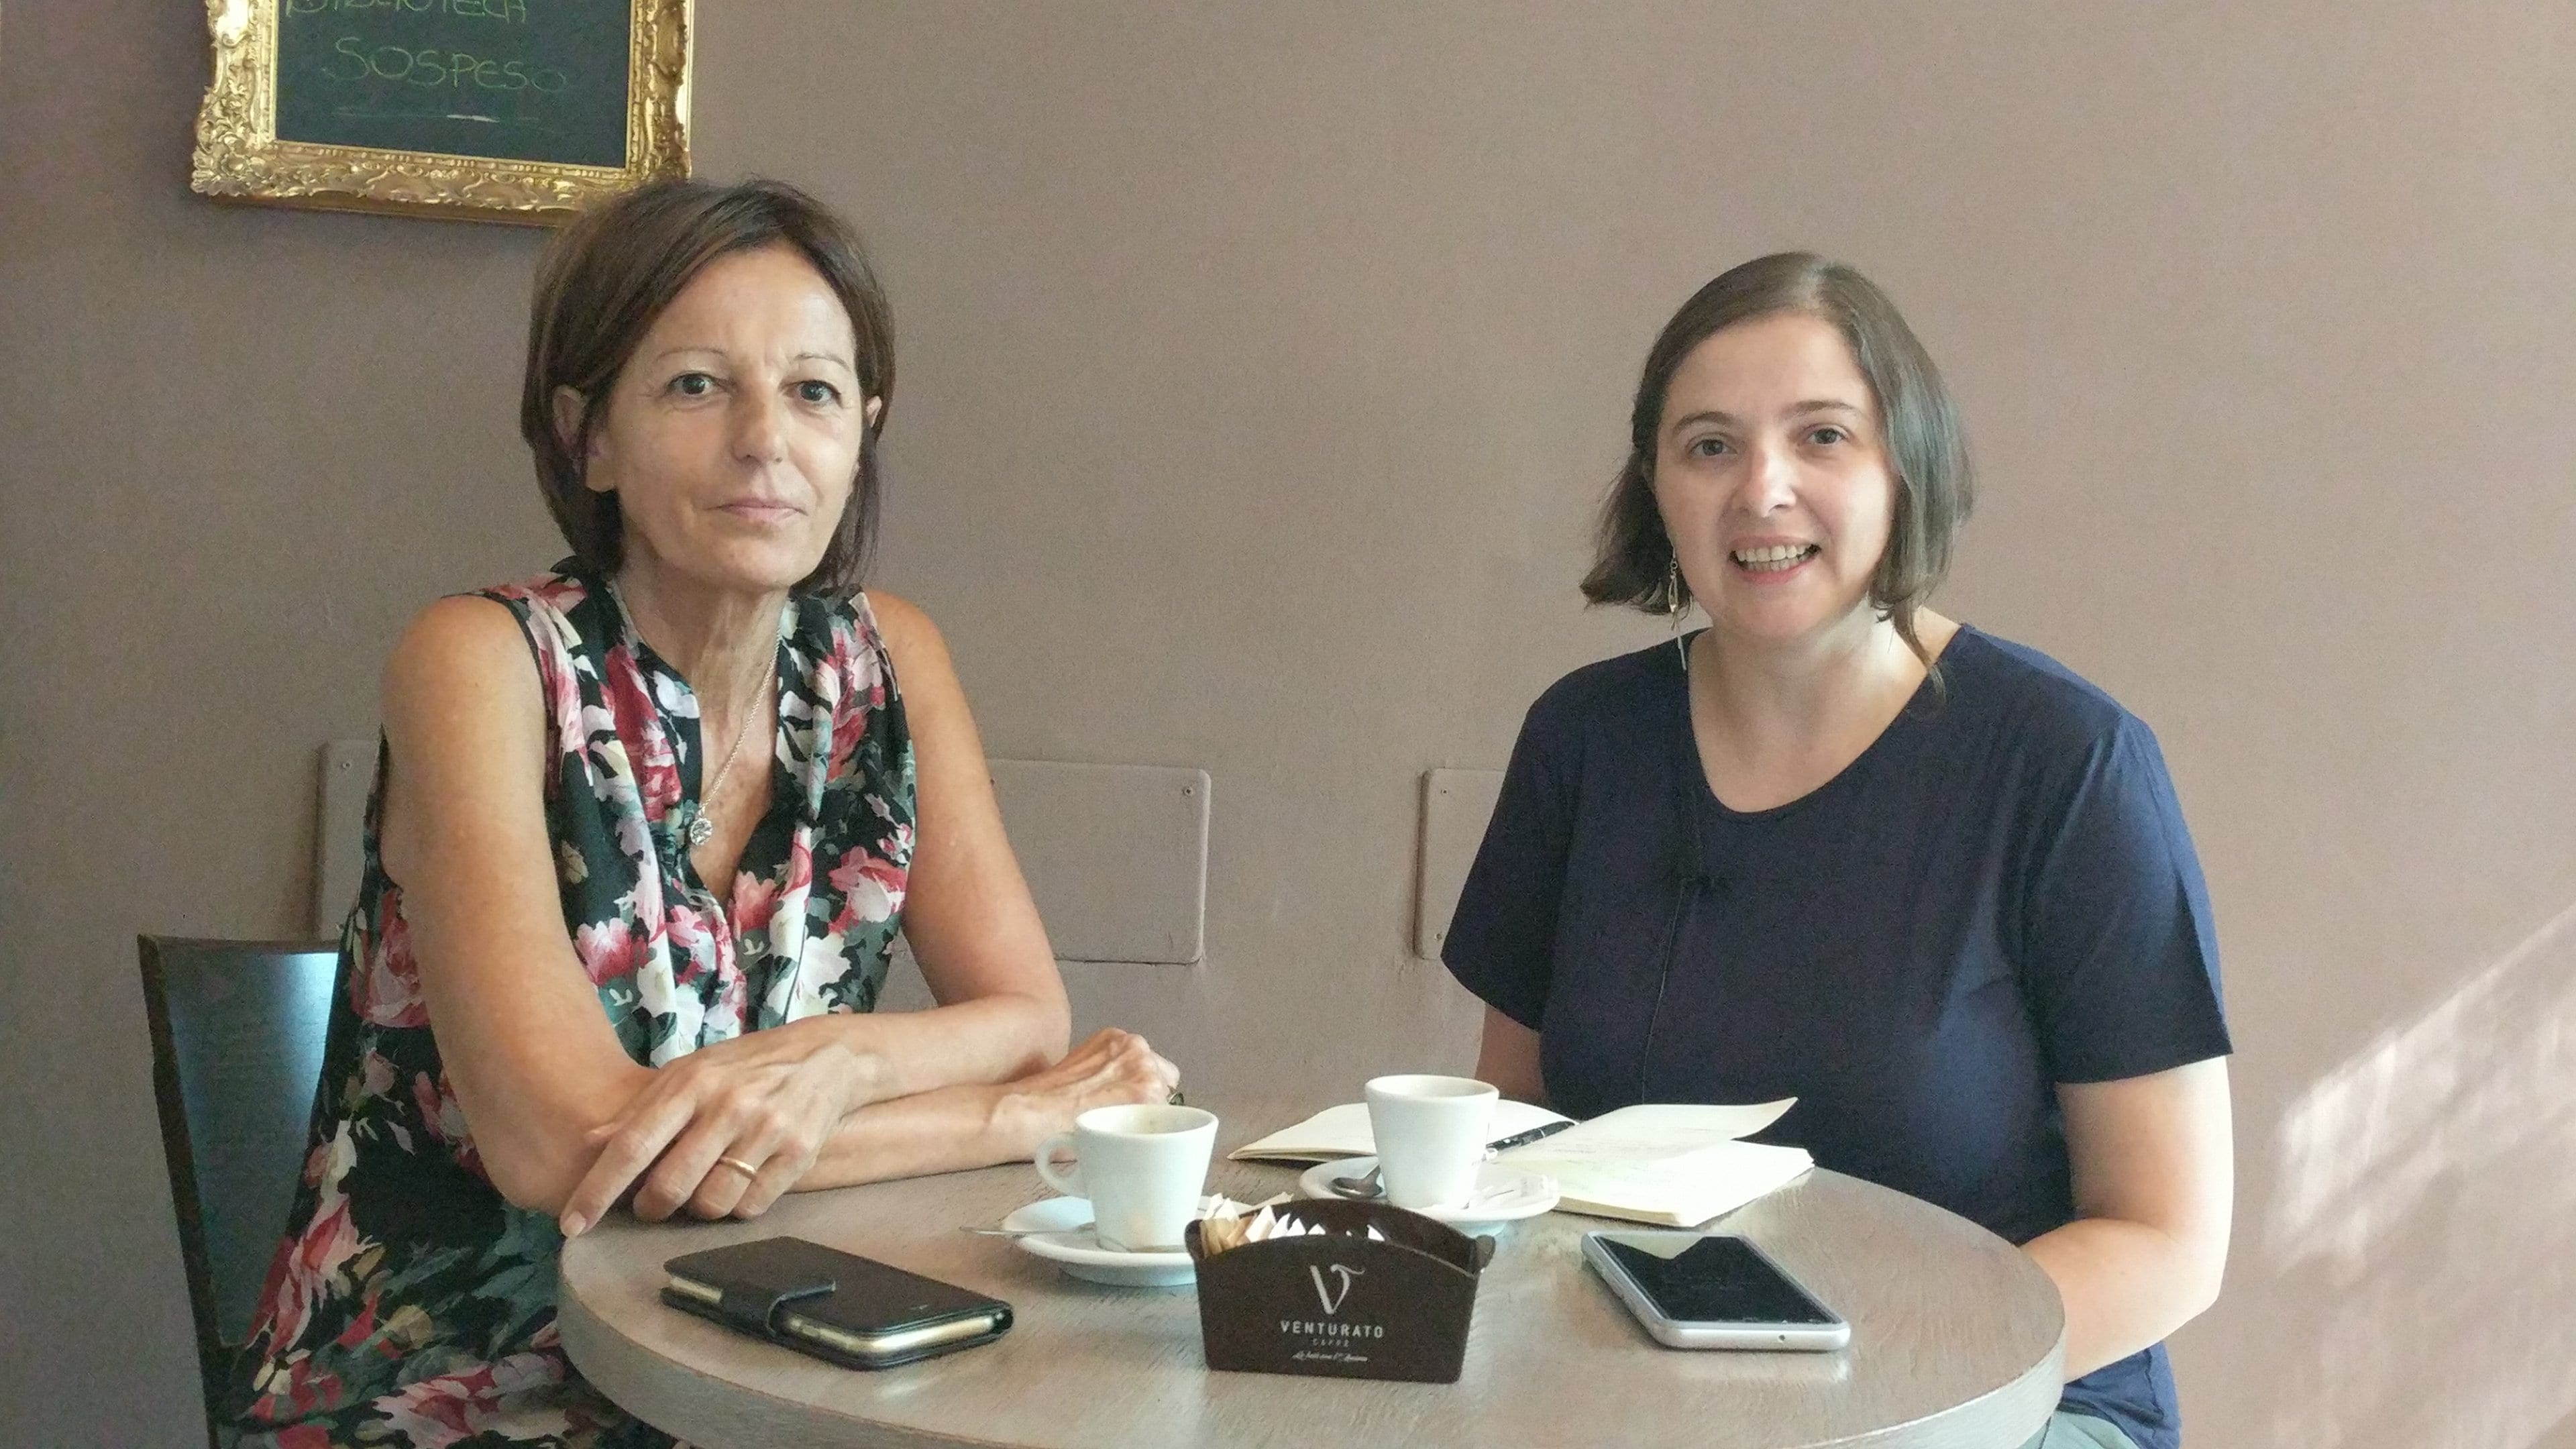 Il tempo di un caffè con Lorella Moiso: “Un passo verso la città per trovare nuove risorse per migliorare Saronno”